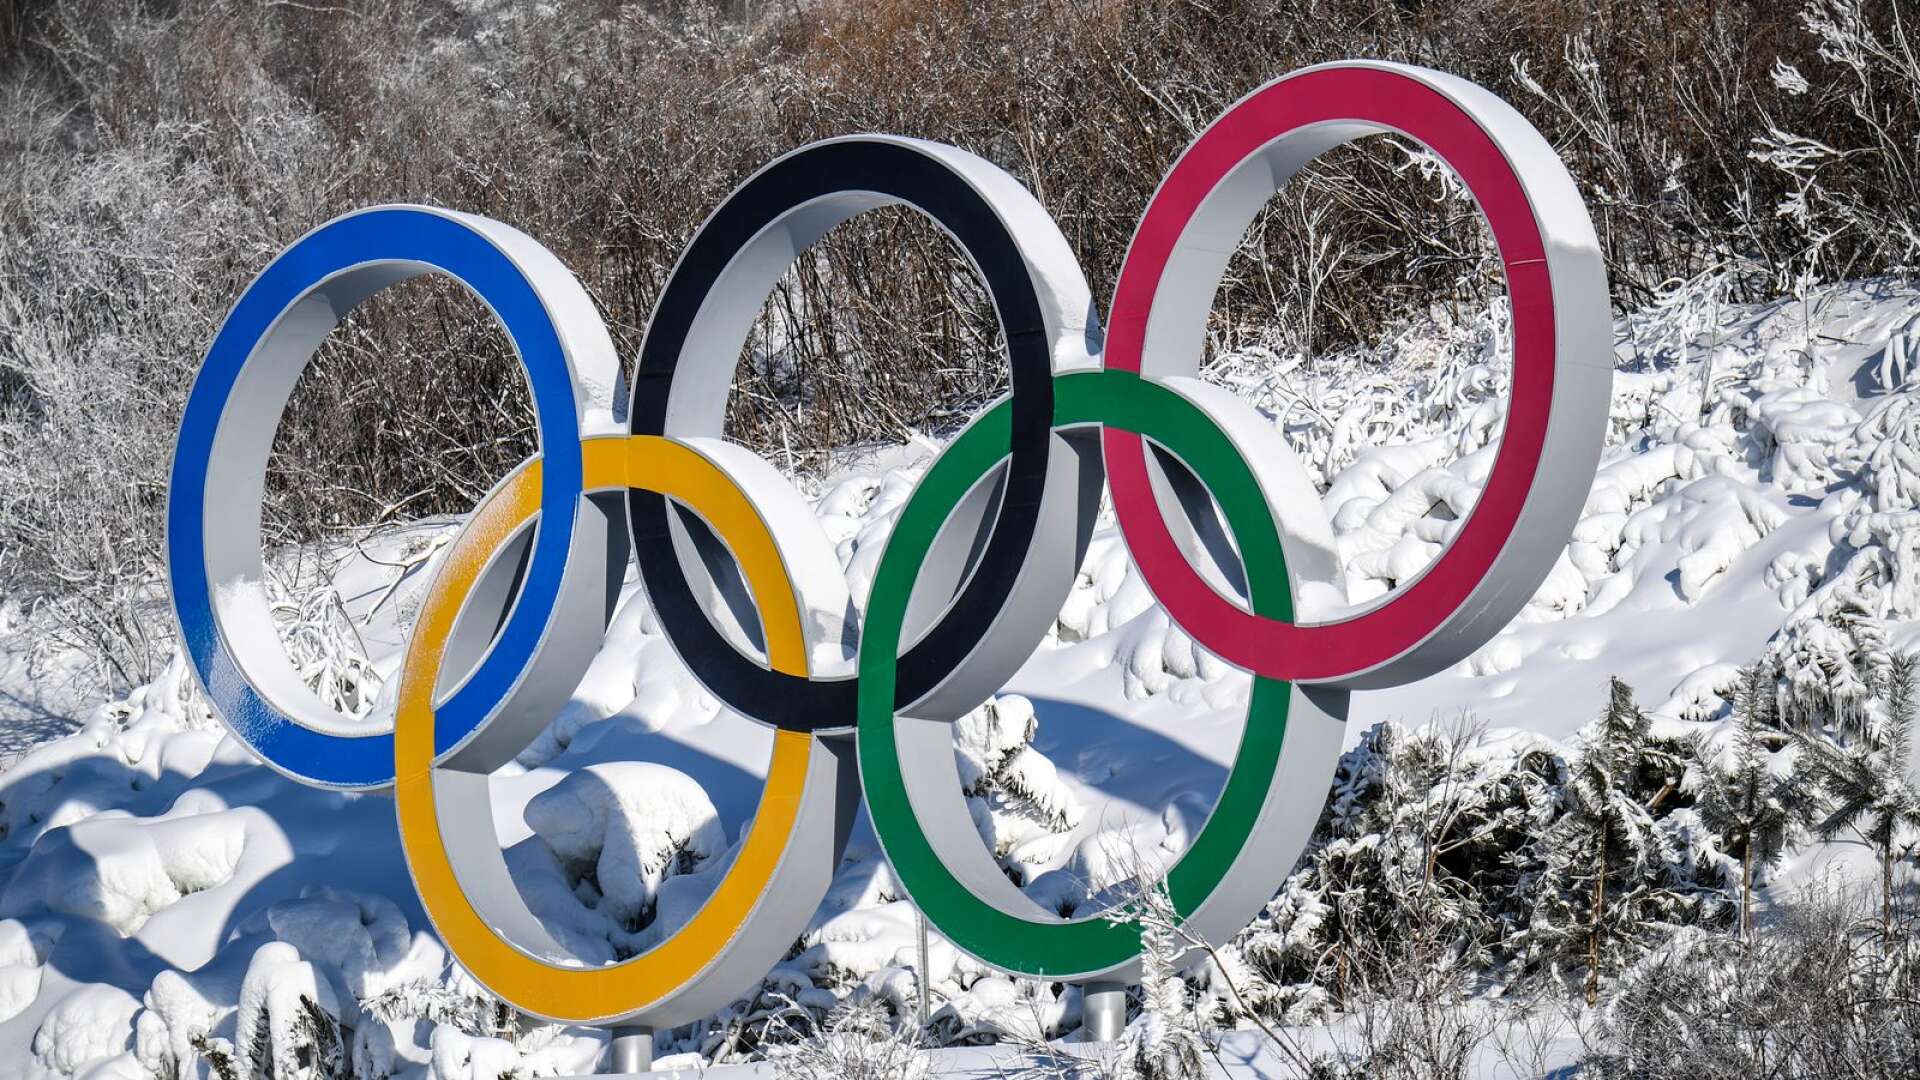  Regeringen har gett grönt ljus för den svenska ansökan att arrangera vinter-OS. 